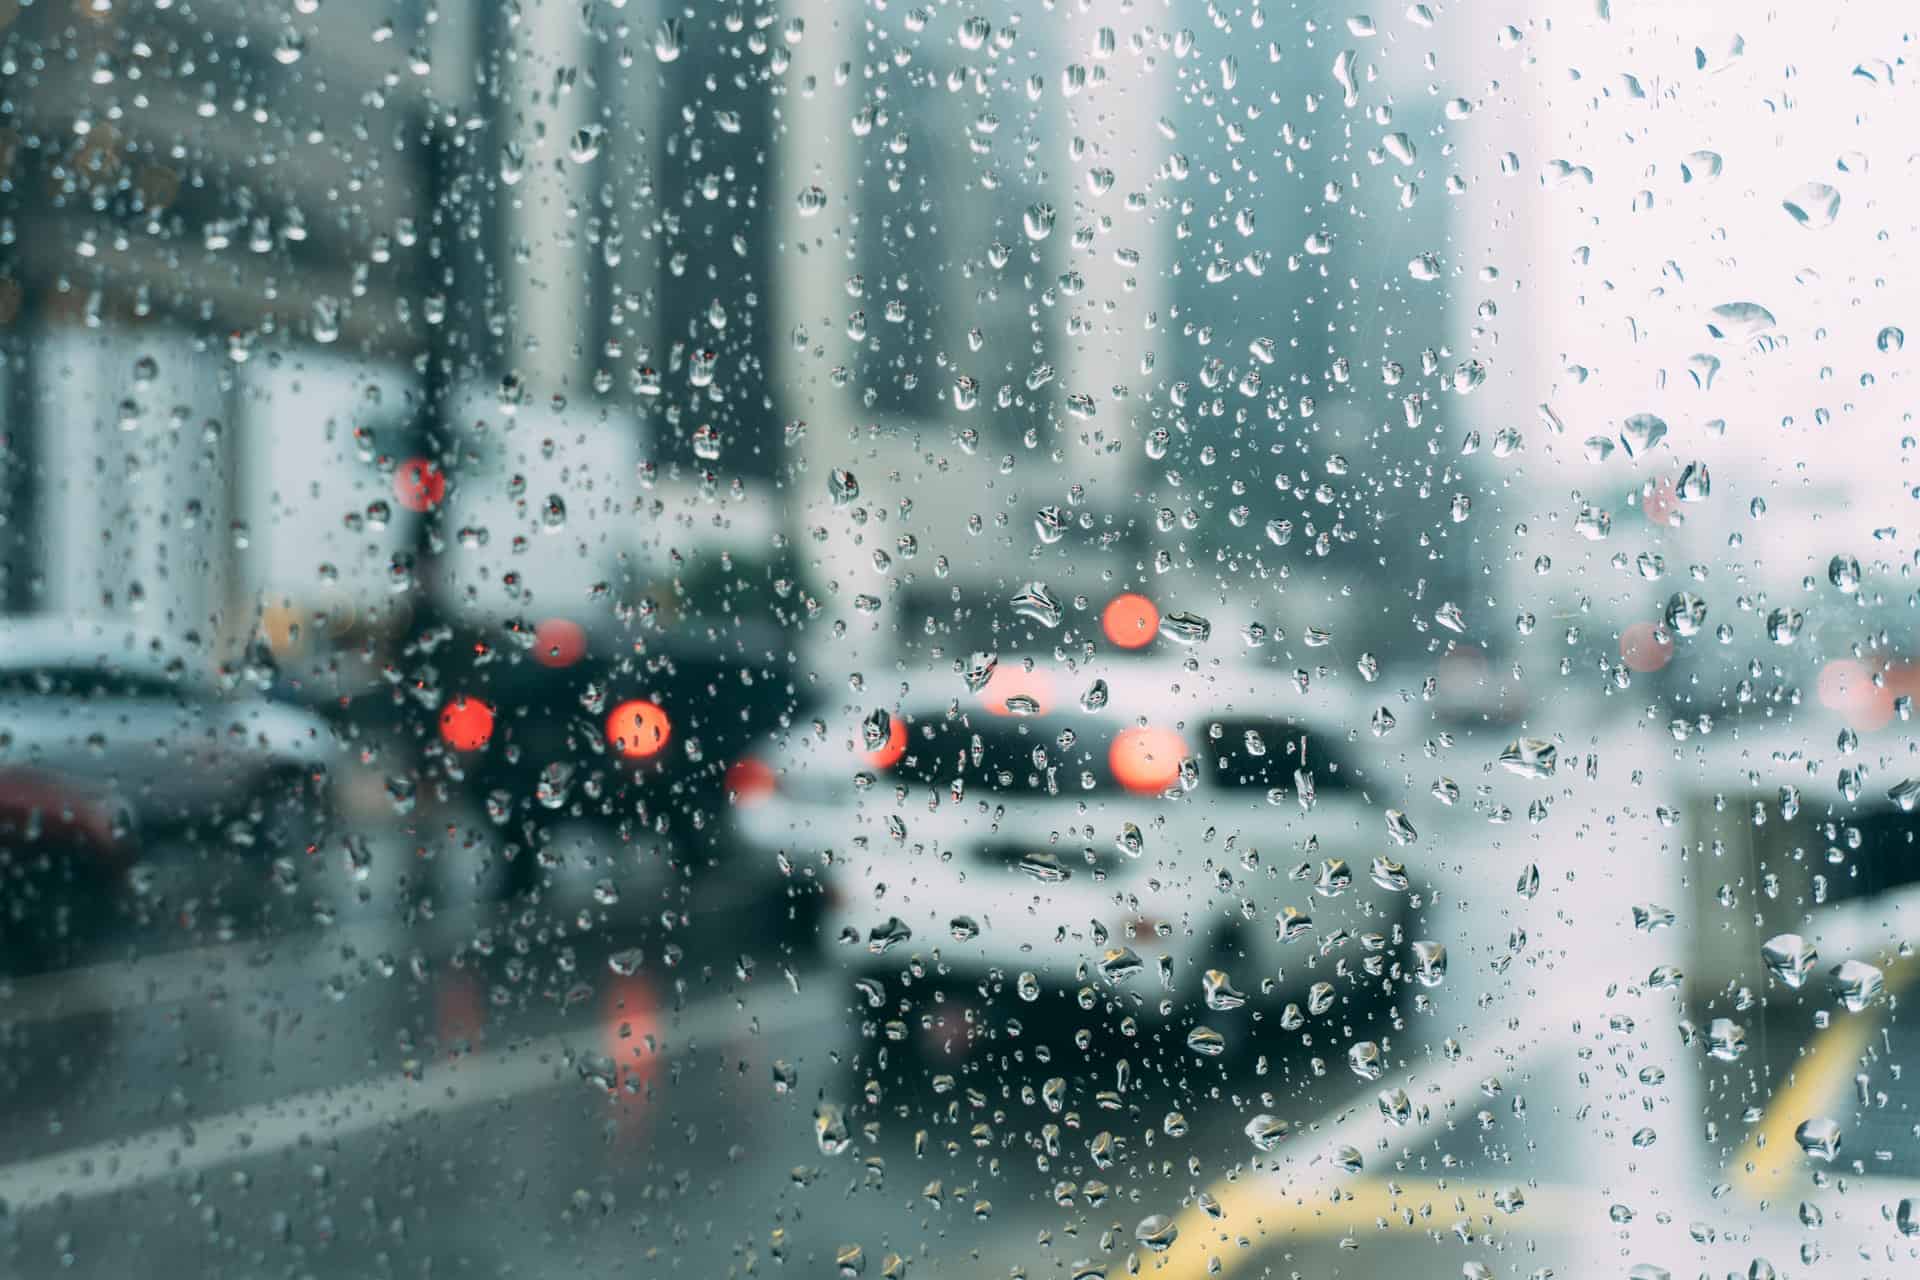 rain on car windshield